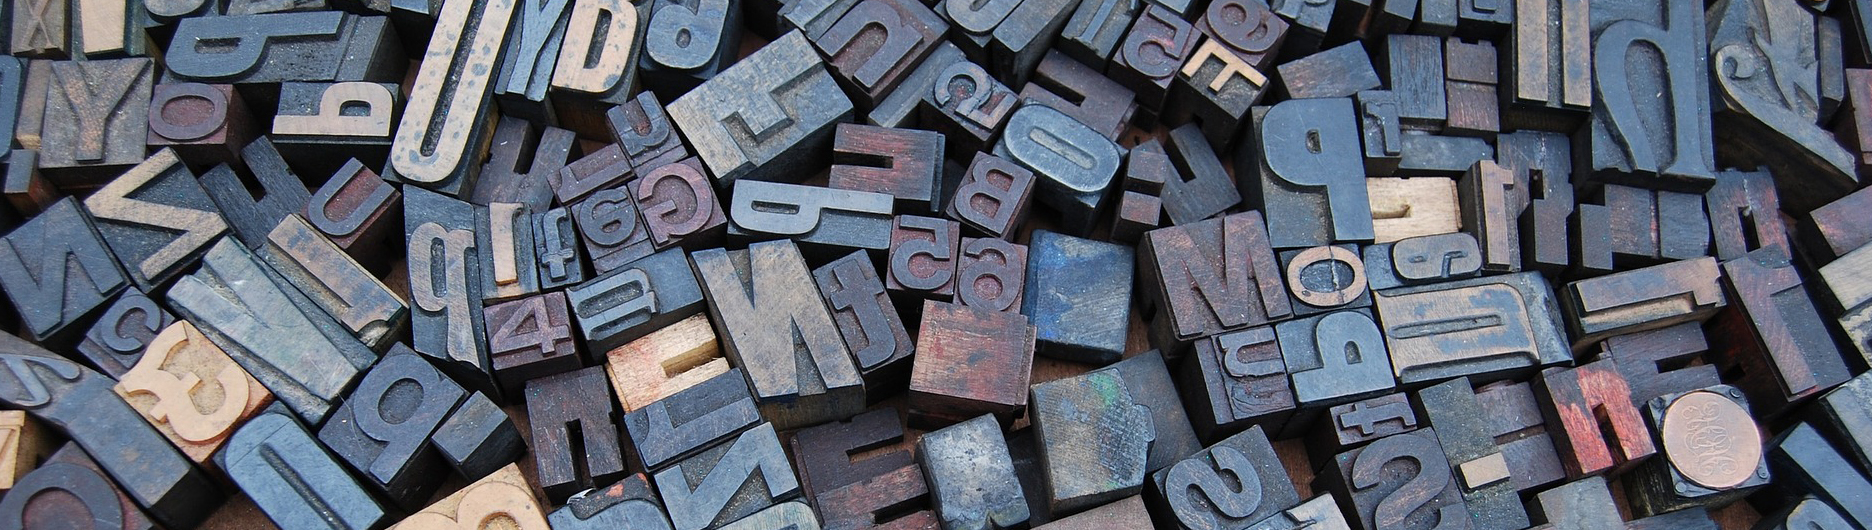 Typografia na internete ake pismo pouzit na webe